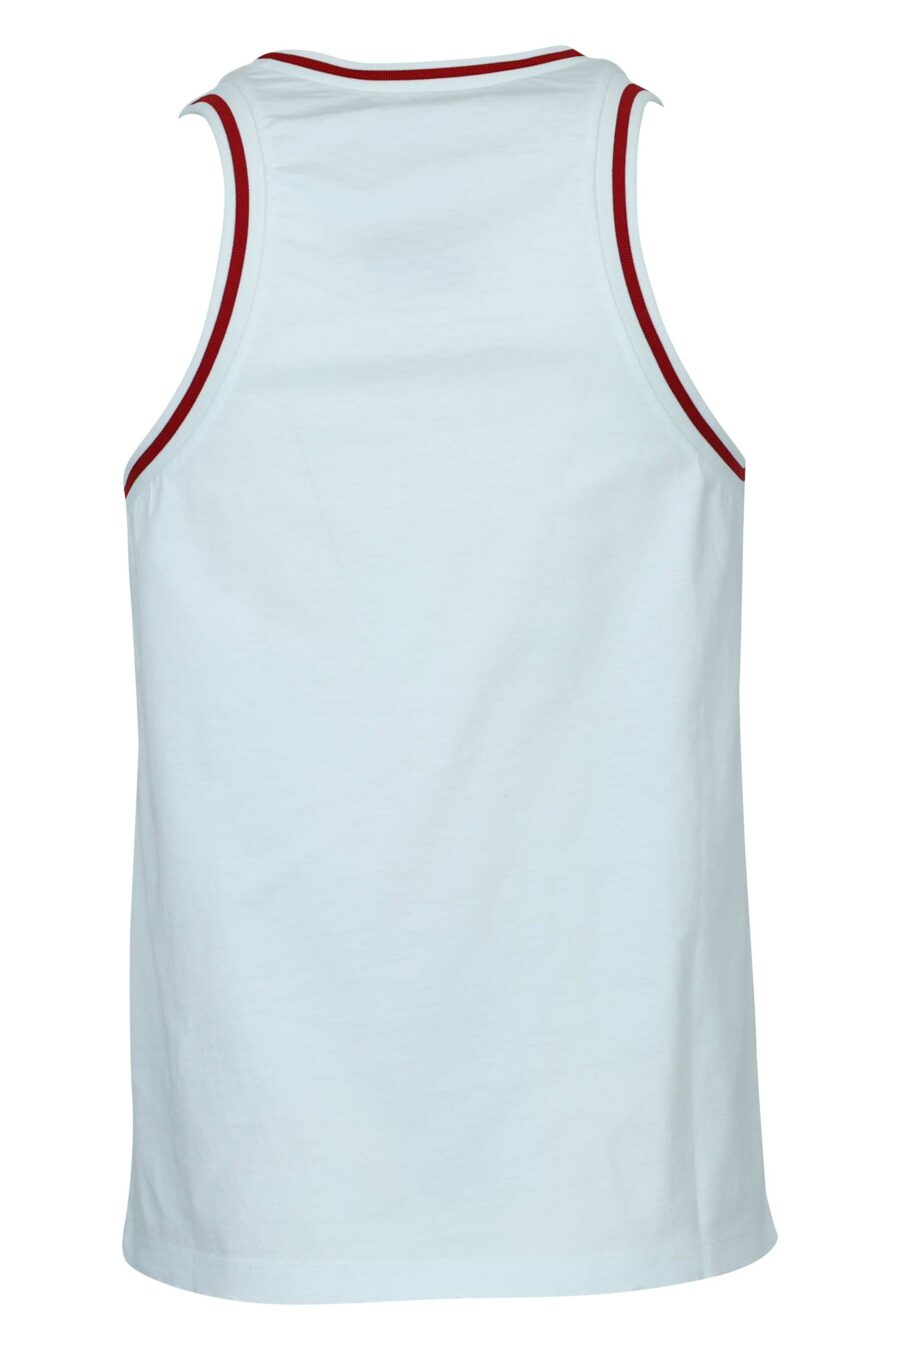 Weißes ärmelloses T-Shirt mit Mini-Logo und roten Details - 8054148505332 1